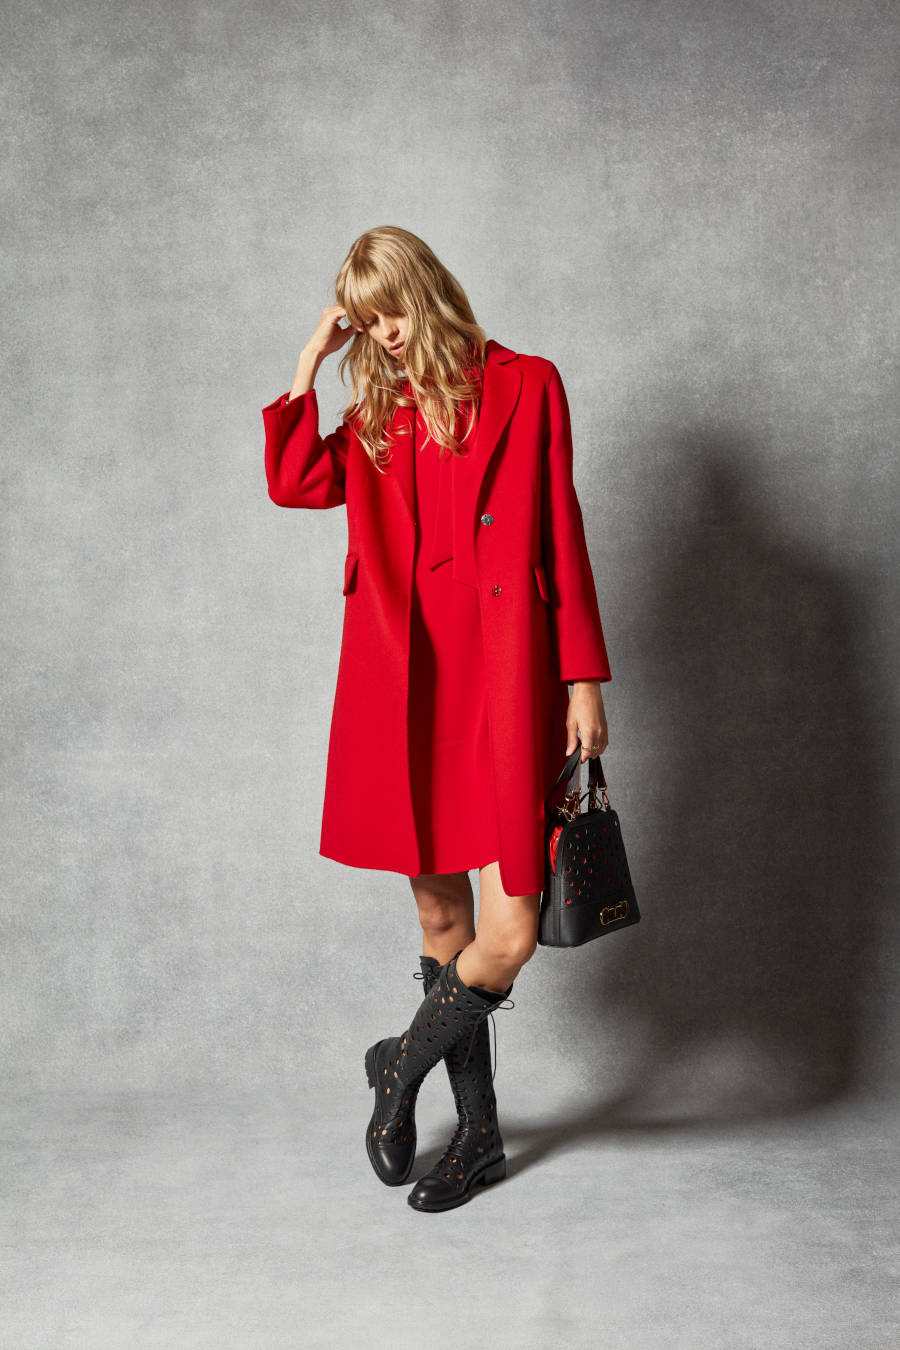 Foto de modelo usando bota de cano alto e sobretudo vermelho, fazendo contraste com a sua bolsa preta